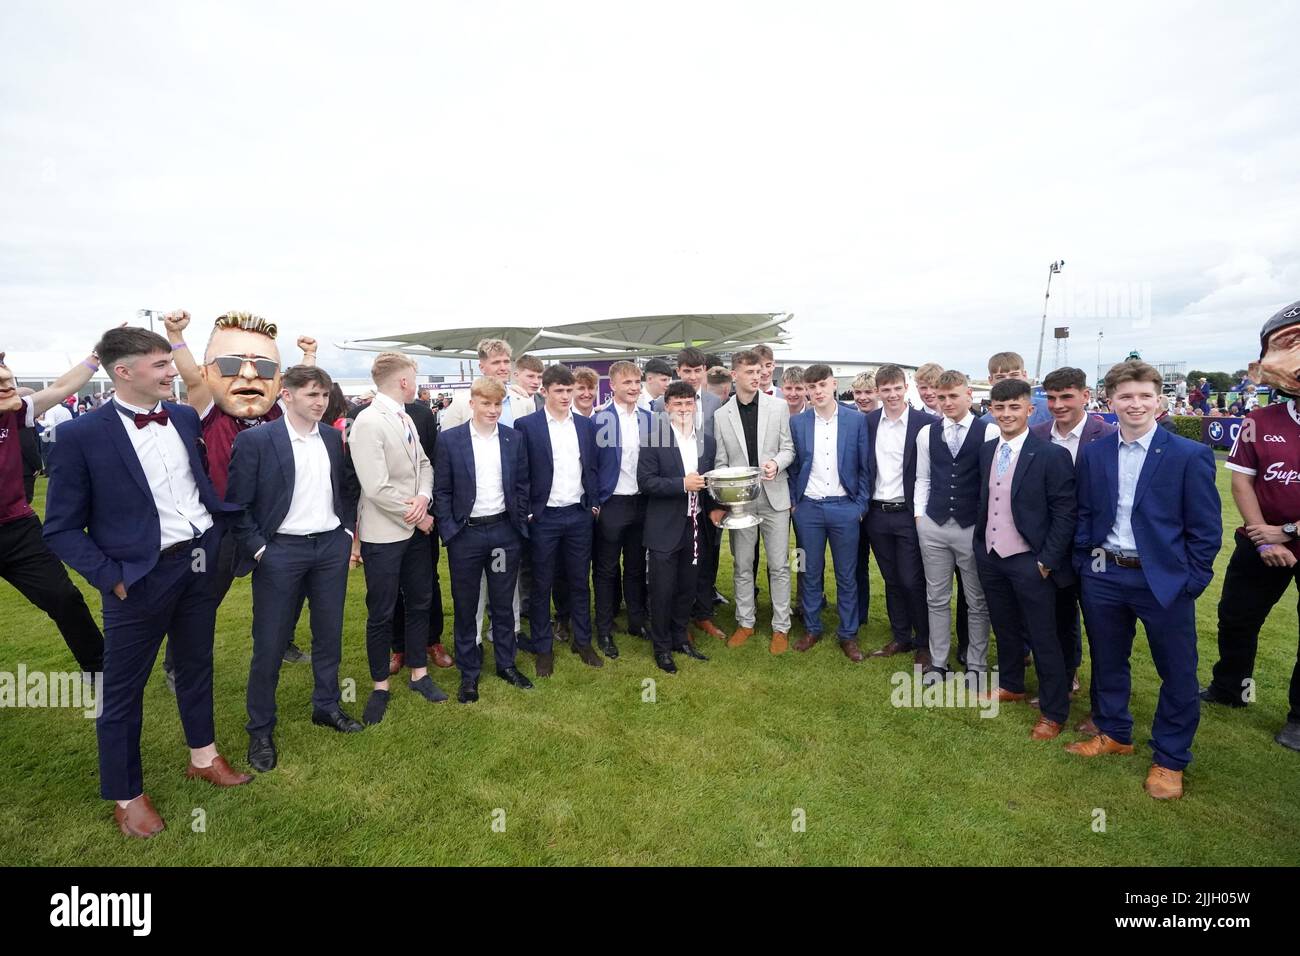 Los hombres de Galway se presentan con su trofeo en el anillo de desfile durante el segundo día del Festival de Verano de las carreras de Galway 2022 en el hipódromo de Galway en el condado de Galway, Irlanda. Fecha de la foto: Martes 26 de julio de 2022. Foto de stock